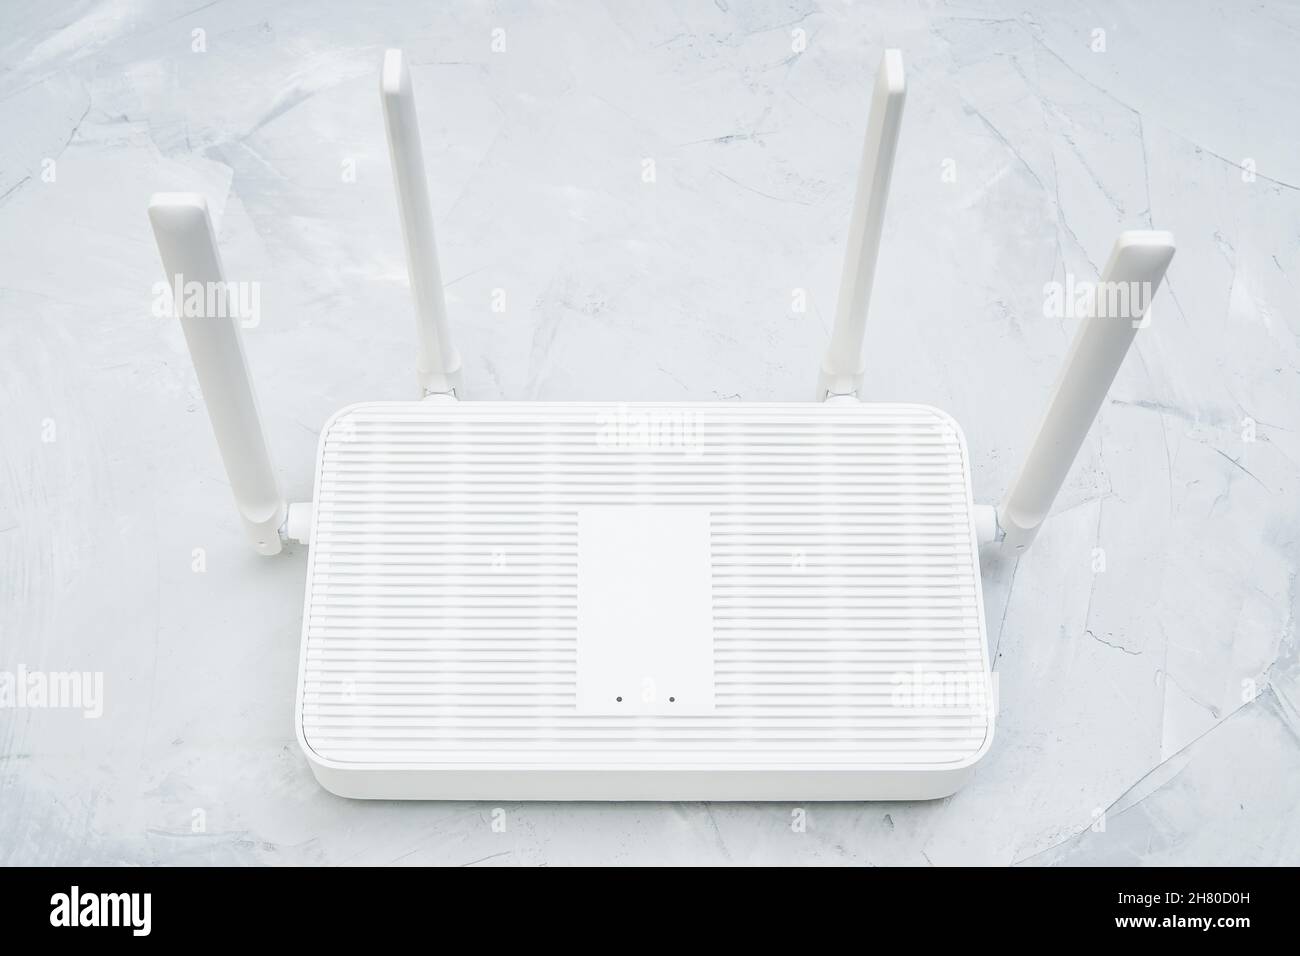 Vista dall'alto di un router wi-fi 6 dual band con quattro antenne posizionate su un tavolo in cemento Foto Stock